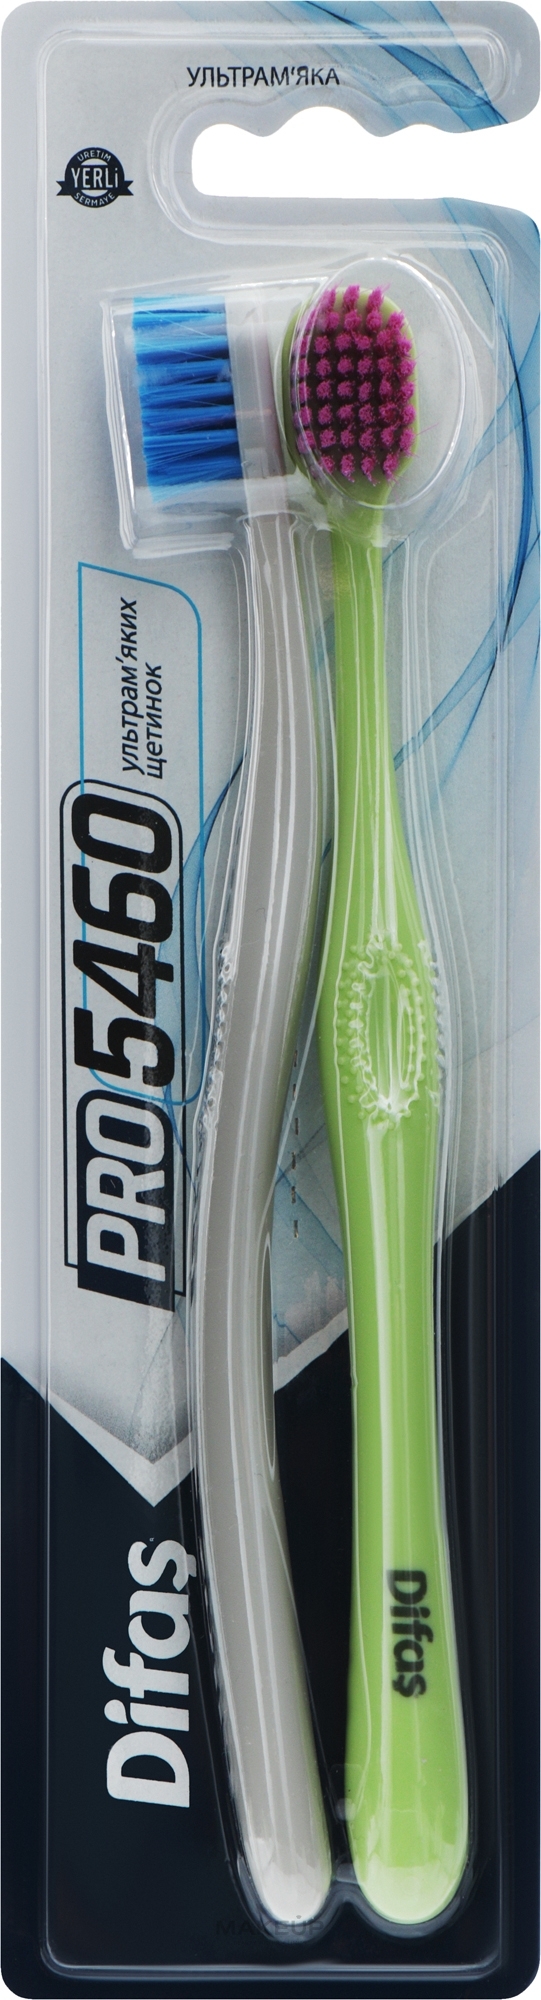 Набір зубних щіток "Ultra Soft", салатова + сіра - Difas PRO 5460 — фото 2шт